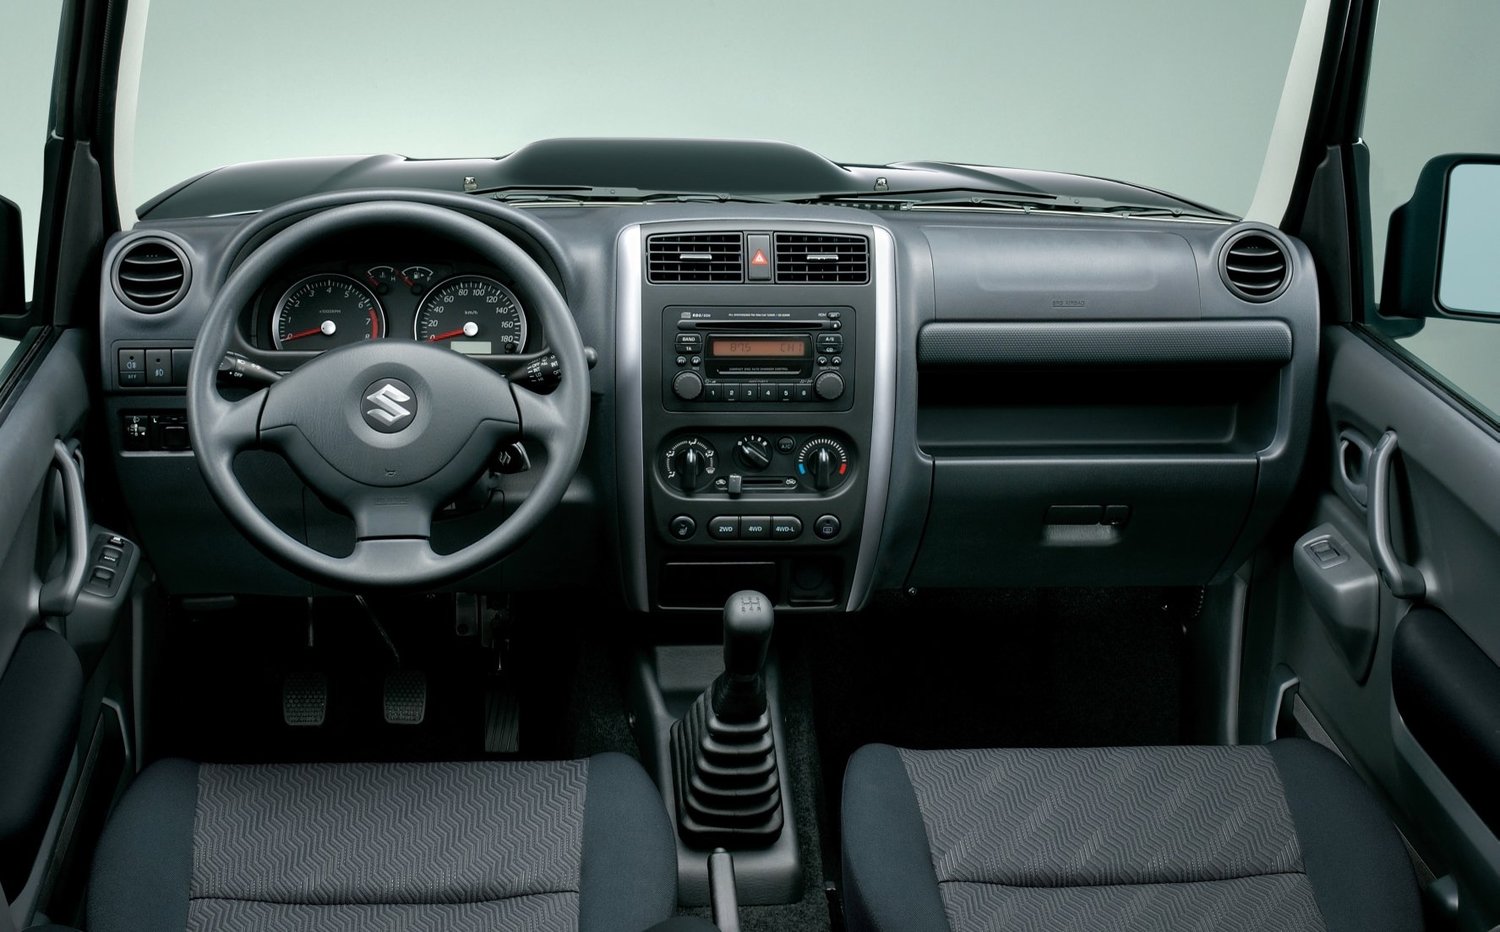 внедорожник Suzuki Jimny 2012 - 2016г выпуска модификация 0.7 AT (64 л.с.) 4×4